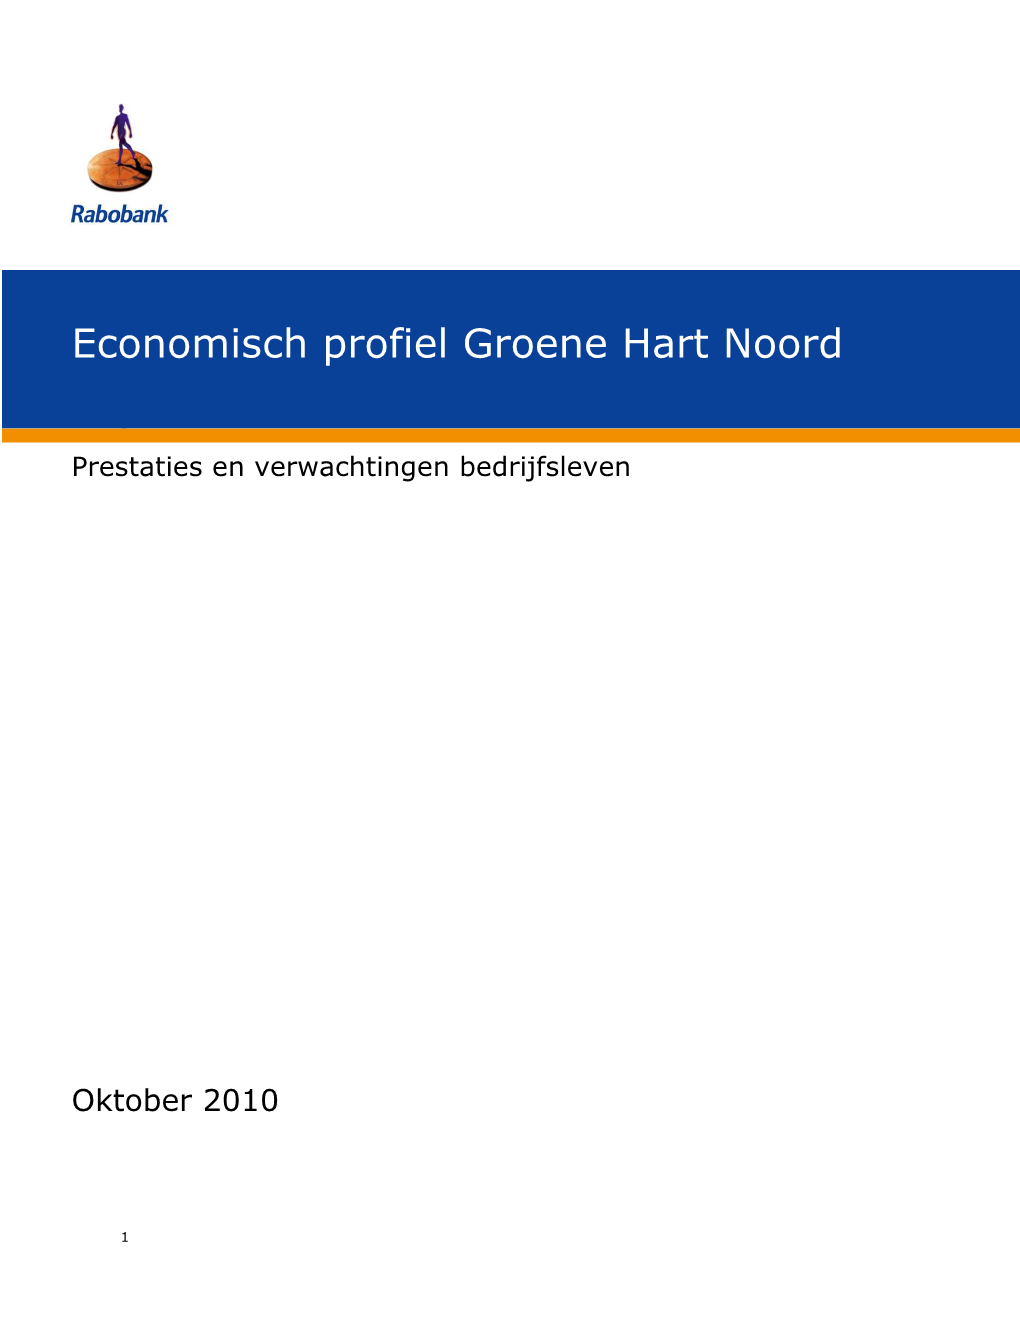 Economisch Profiel Groene Hart Noord